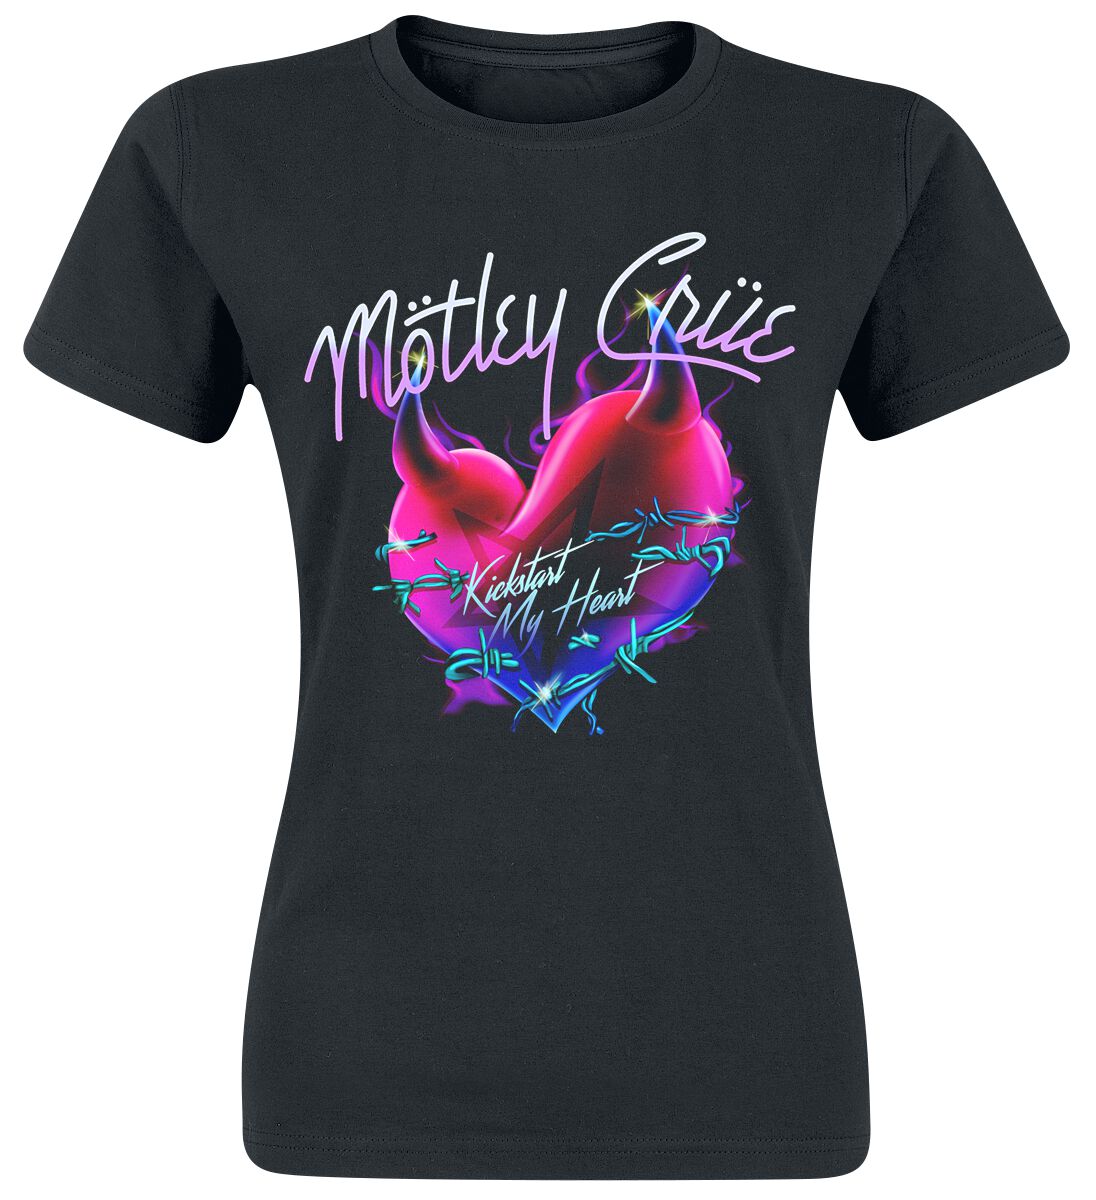 Mötley Crüe T-Shirt - Kick Start - S bis XXL - für Damen - Größe XL - schwarz  - Lizenziertes Merchandise! von Mötley Crüe